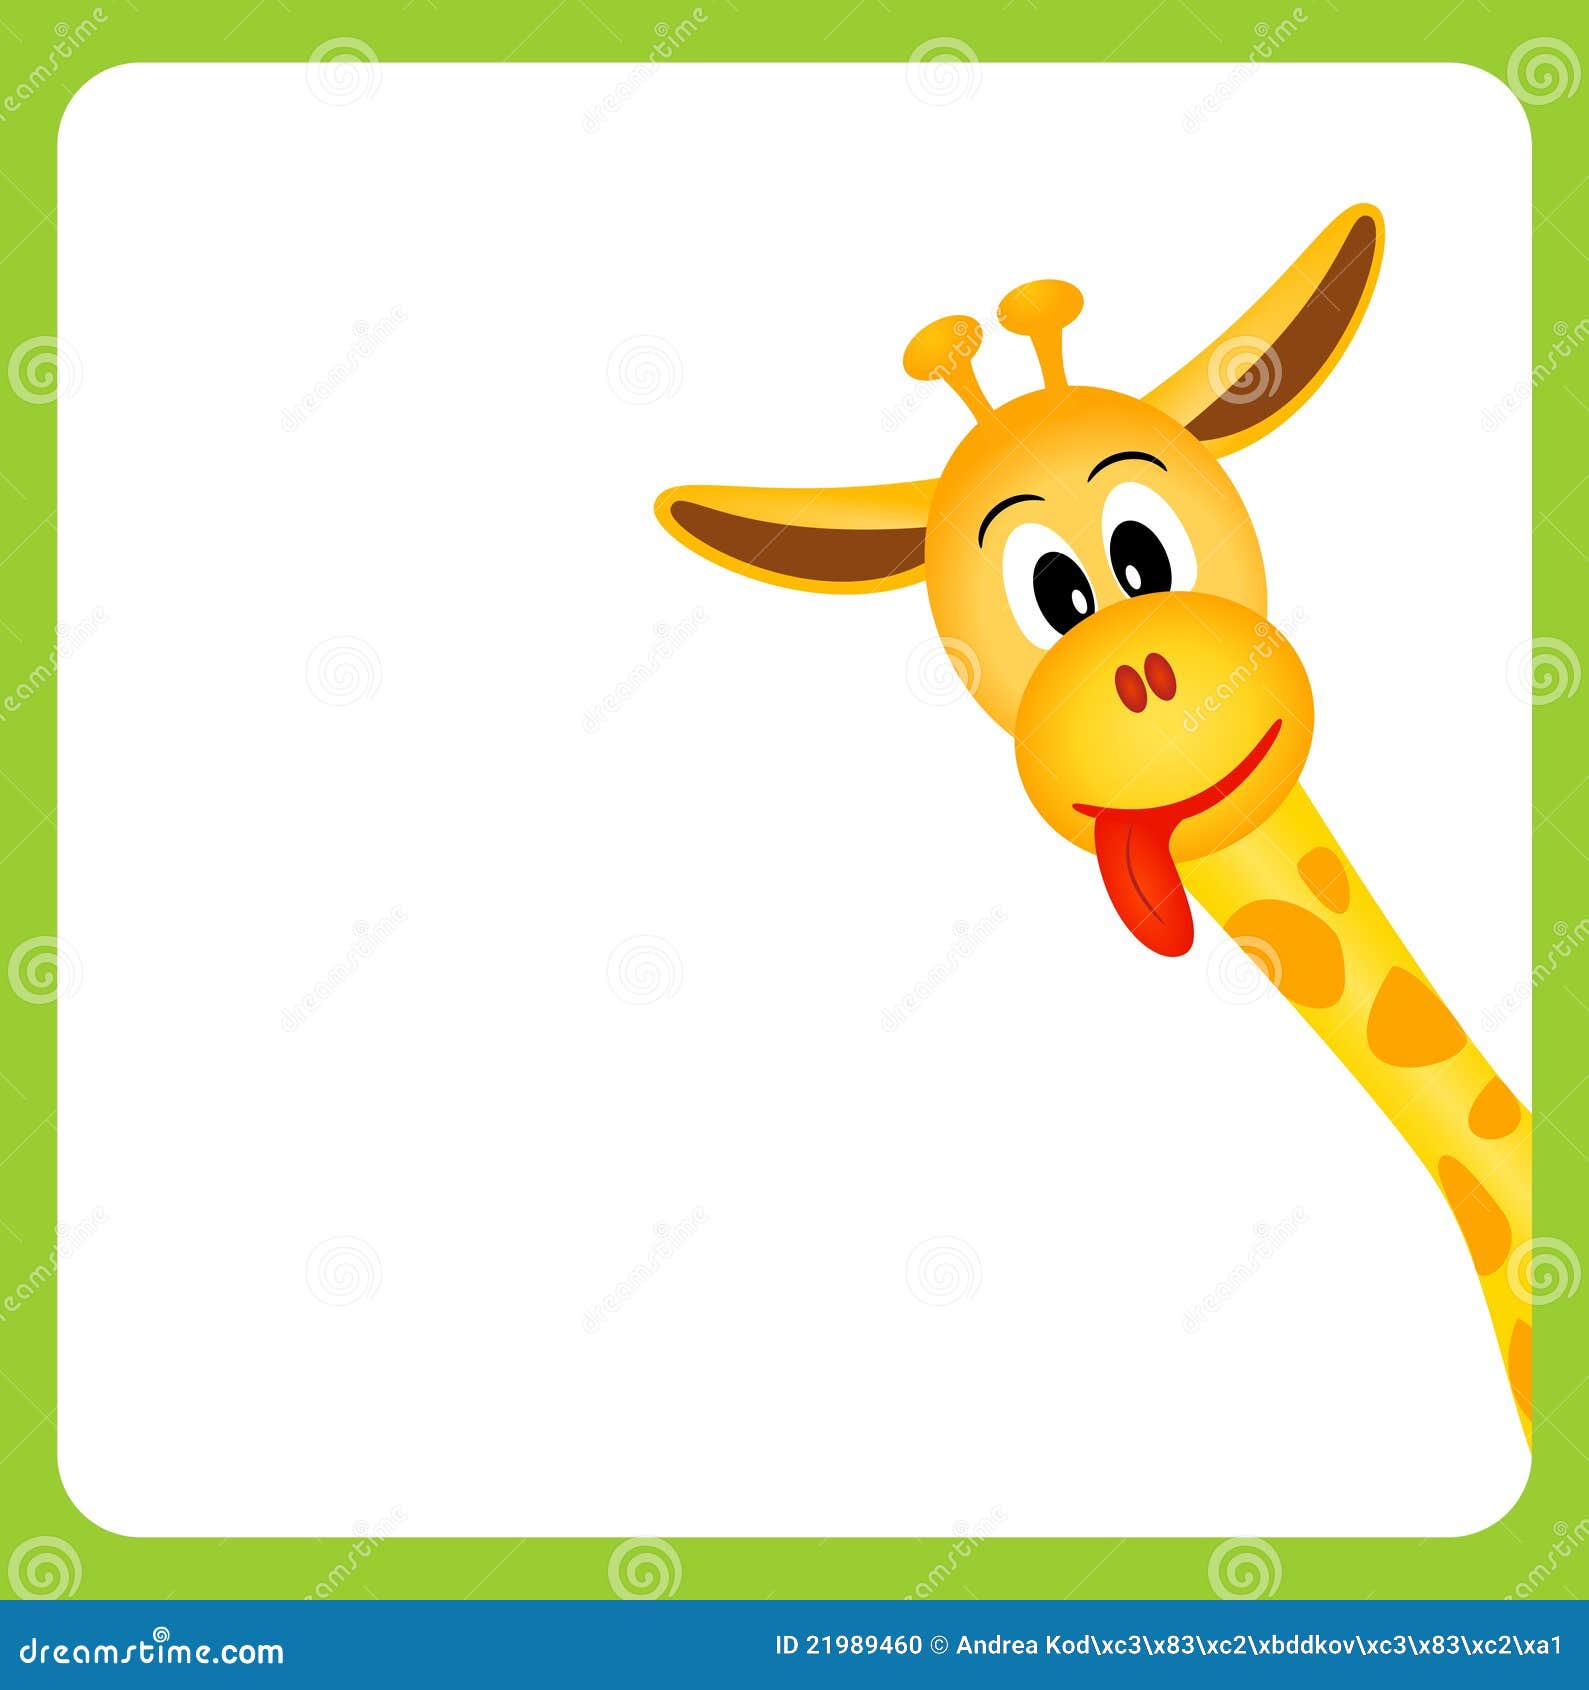 Cute Little Giraffe On White Background Stock Vector ...